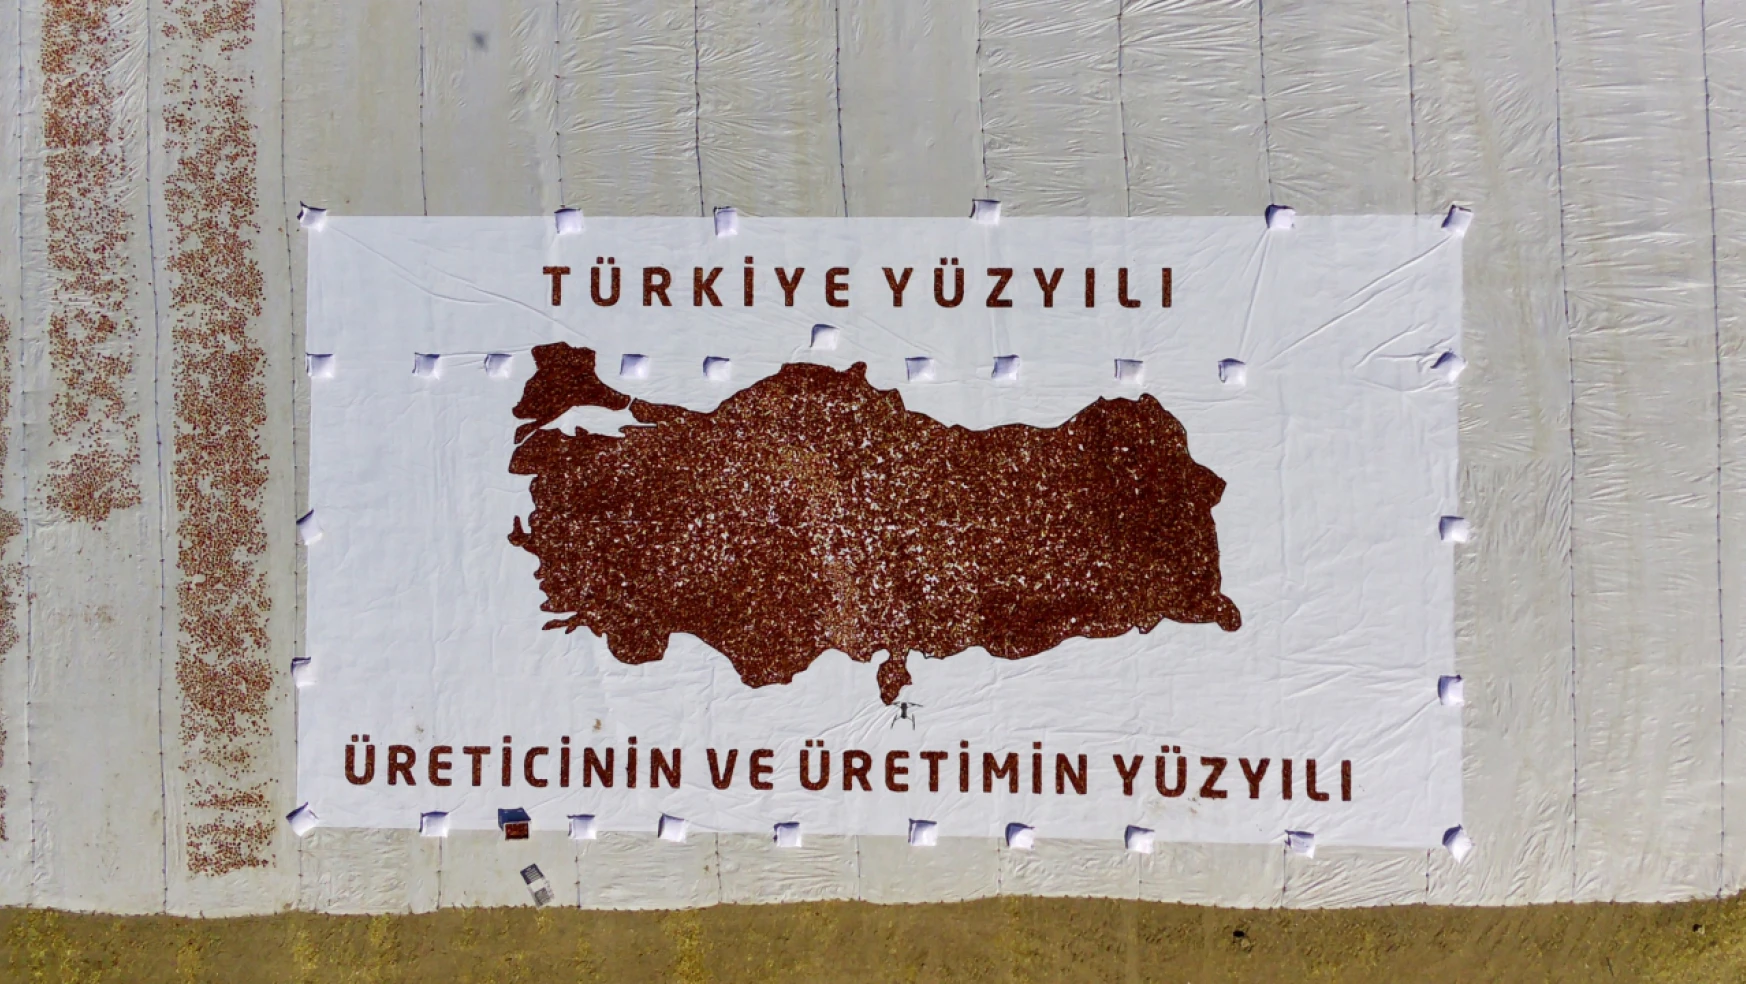 Mevsimlik Tarım İşçileri Kurutmalık Domateslerden Dev Türkiye Haritası Yaptı